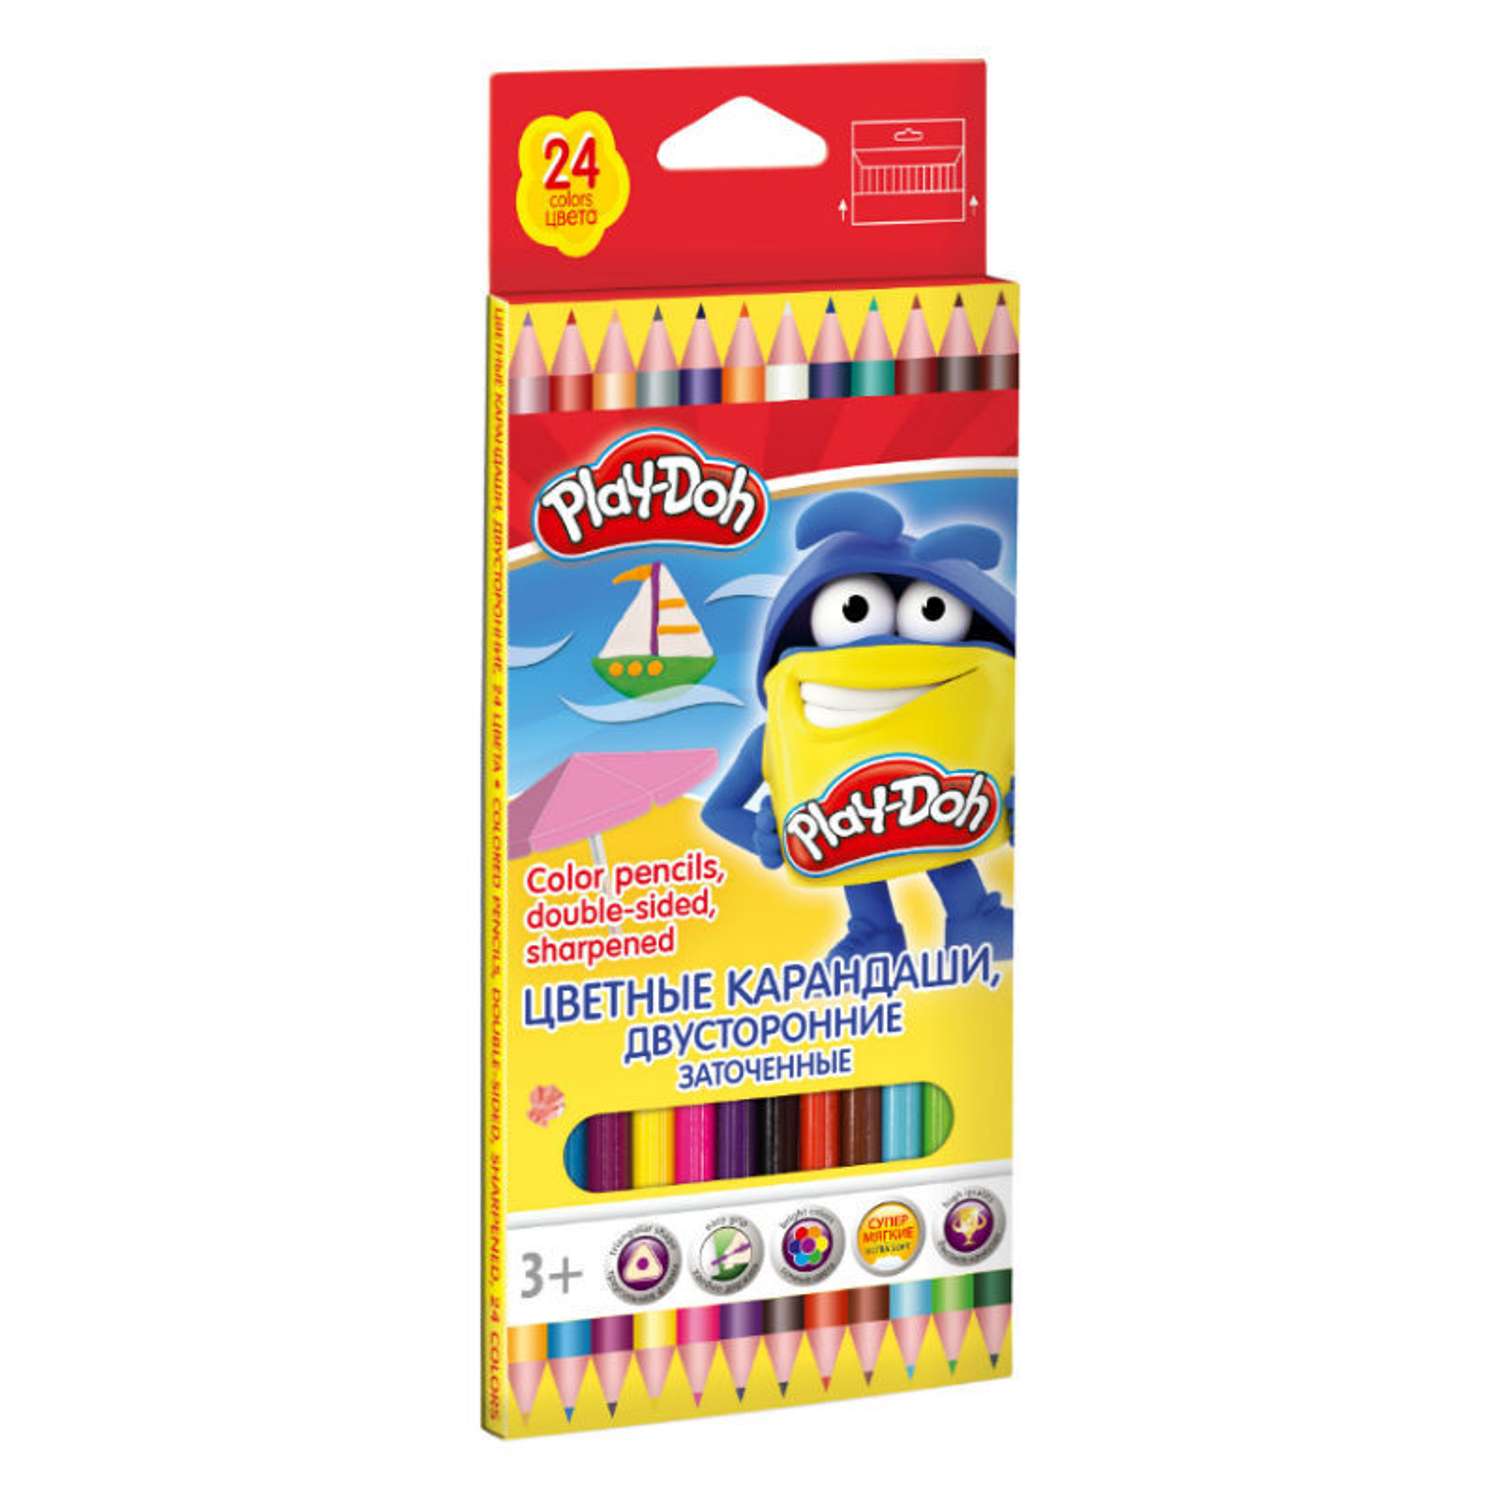 Цветные карандаши Kinderline двусторонние 12 шт.24 цв.Play-Doh - фото 1